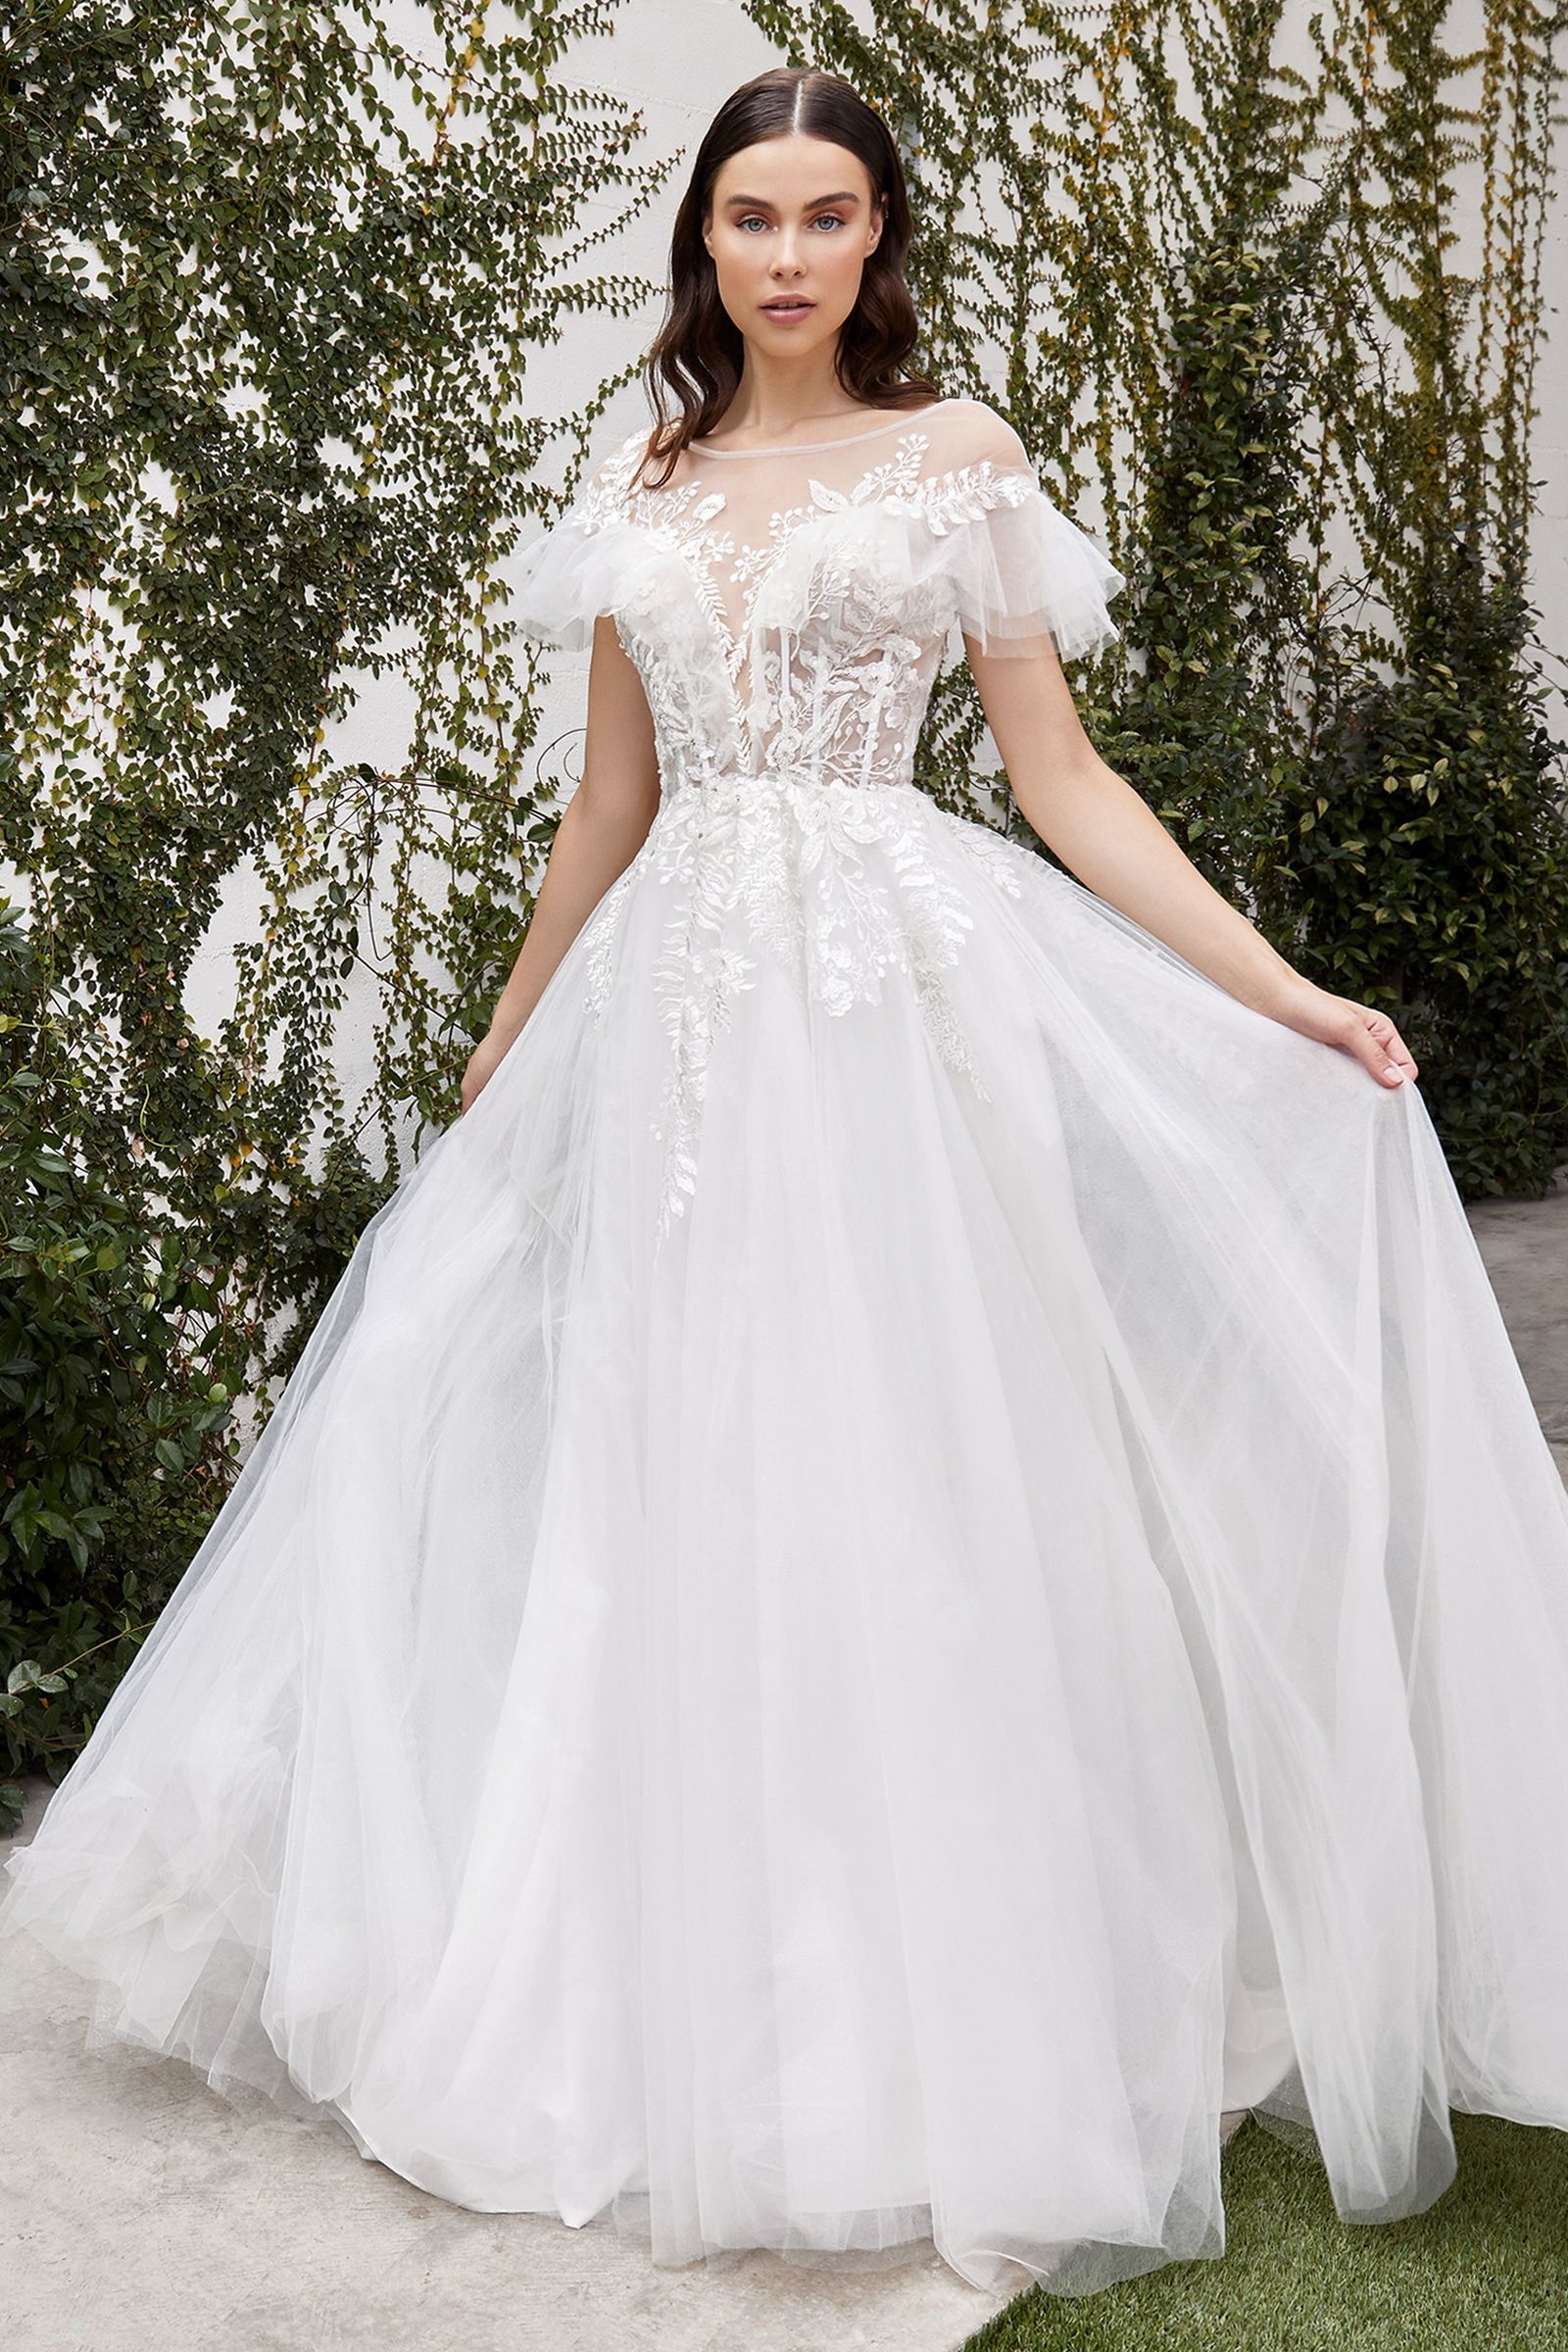 Maurelle wedding gown-smcdress